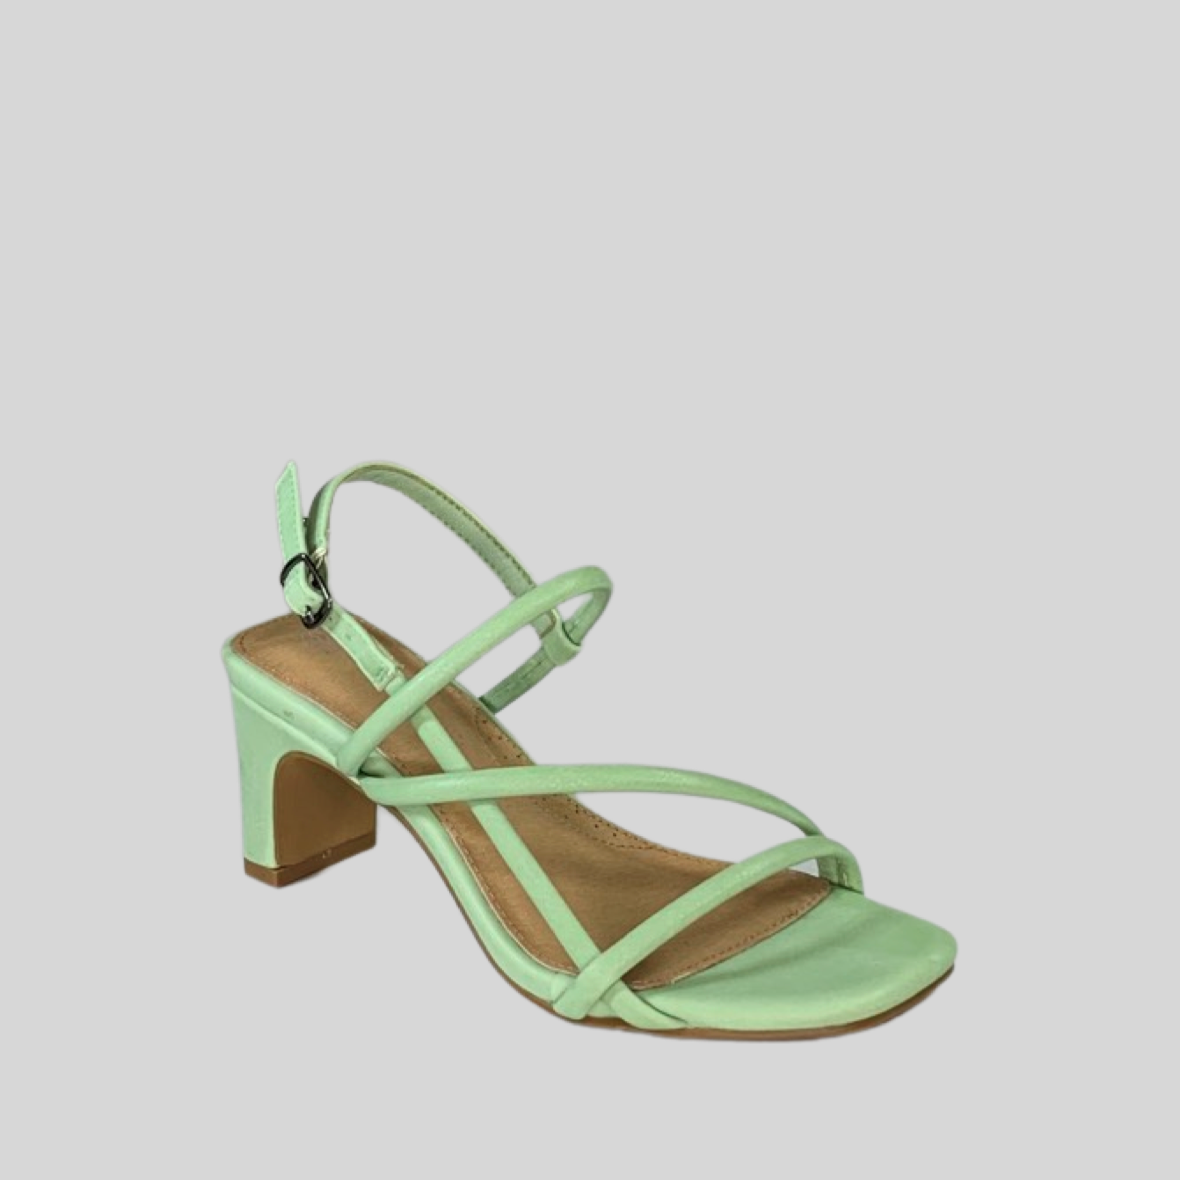 Mint Green Strappy Heels by Bay Lane Footwear